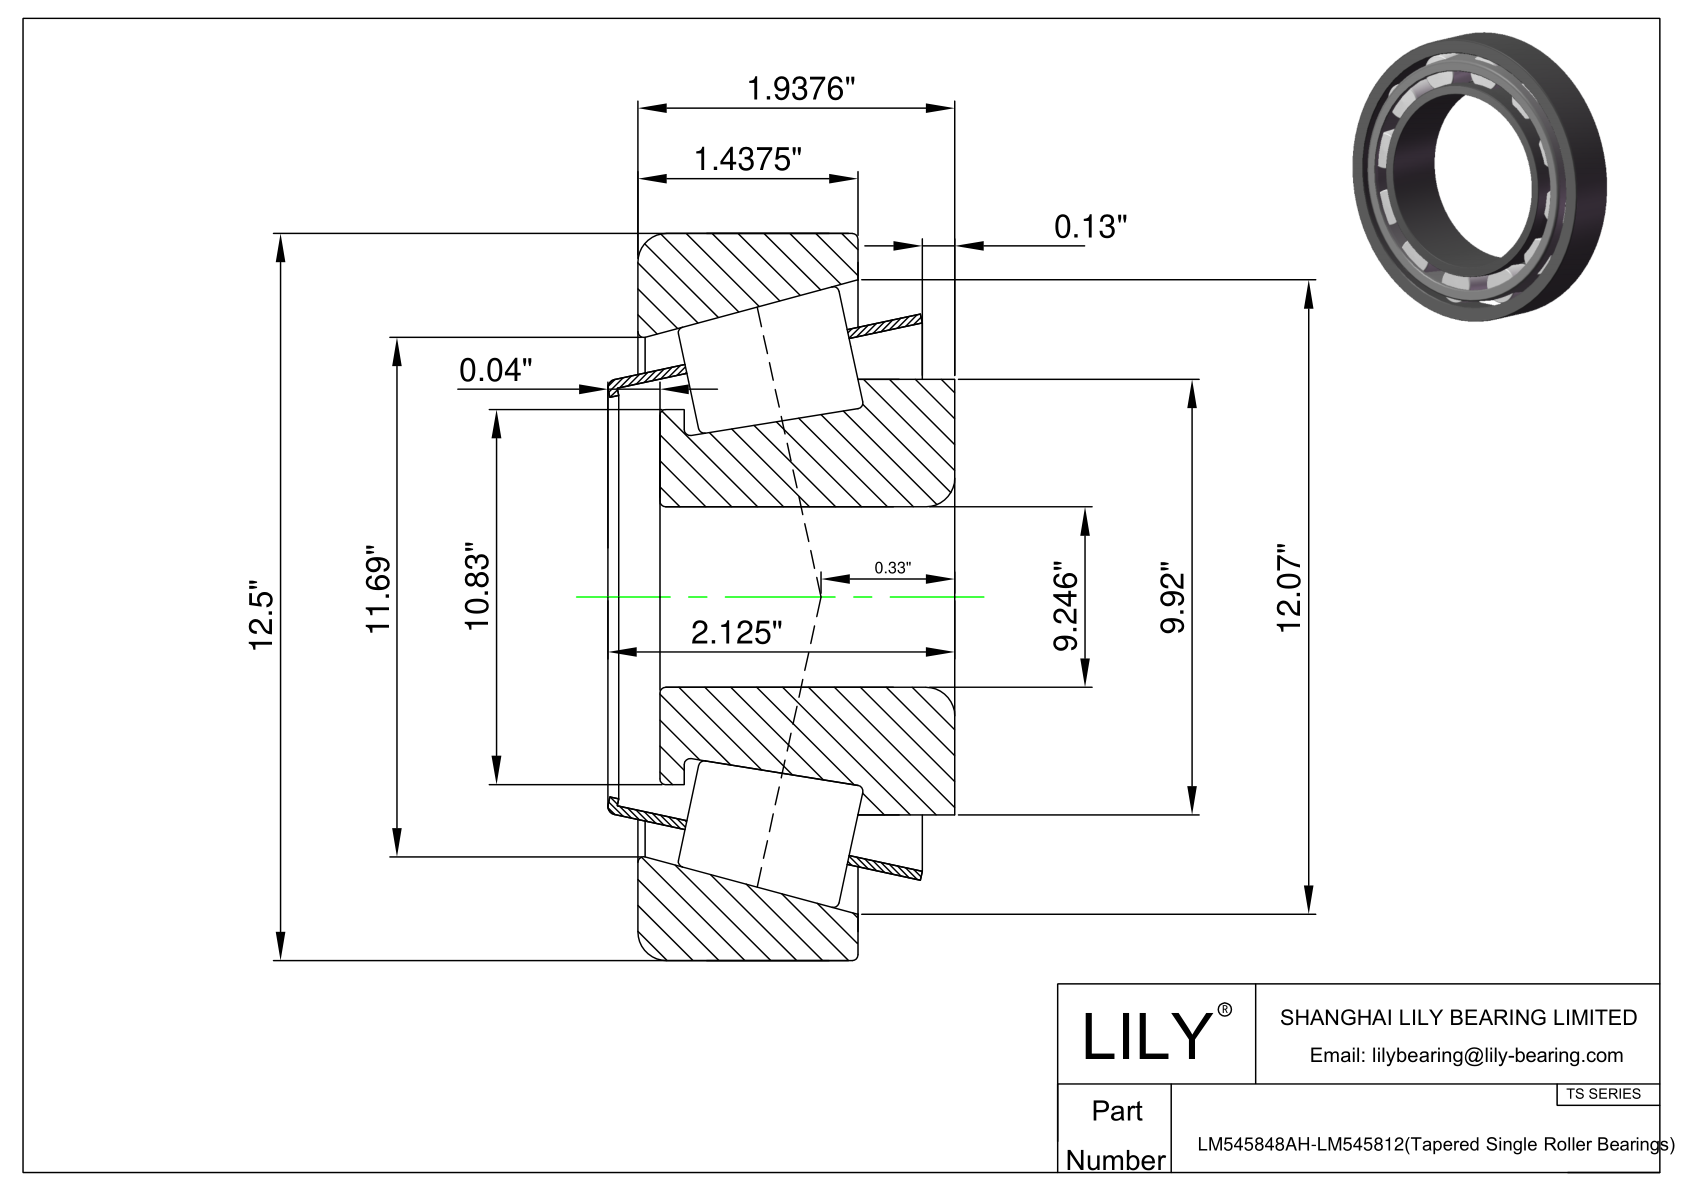 LM545848AH-LM545812 TS系列(圆锥单滚子轴承)(英制) CAD图形